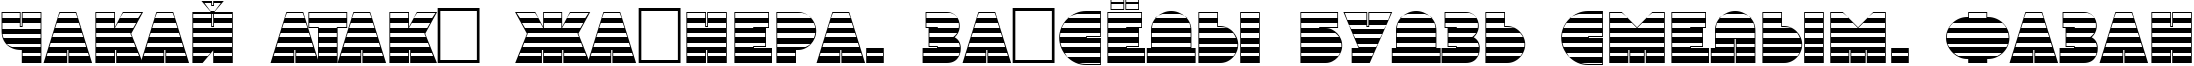 Пример написания шрифтом a_GrotoStrGr текста на белорусском